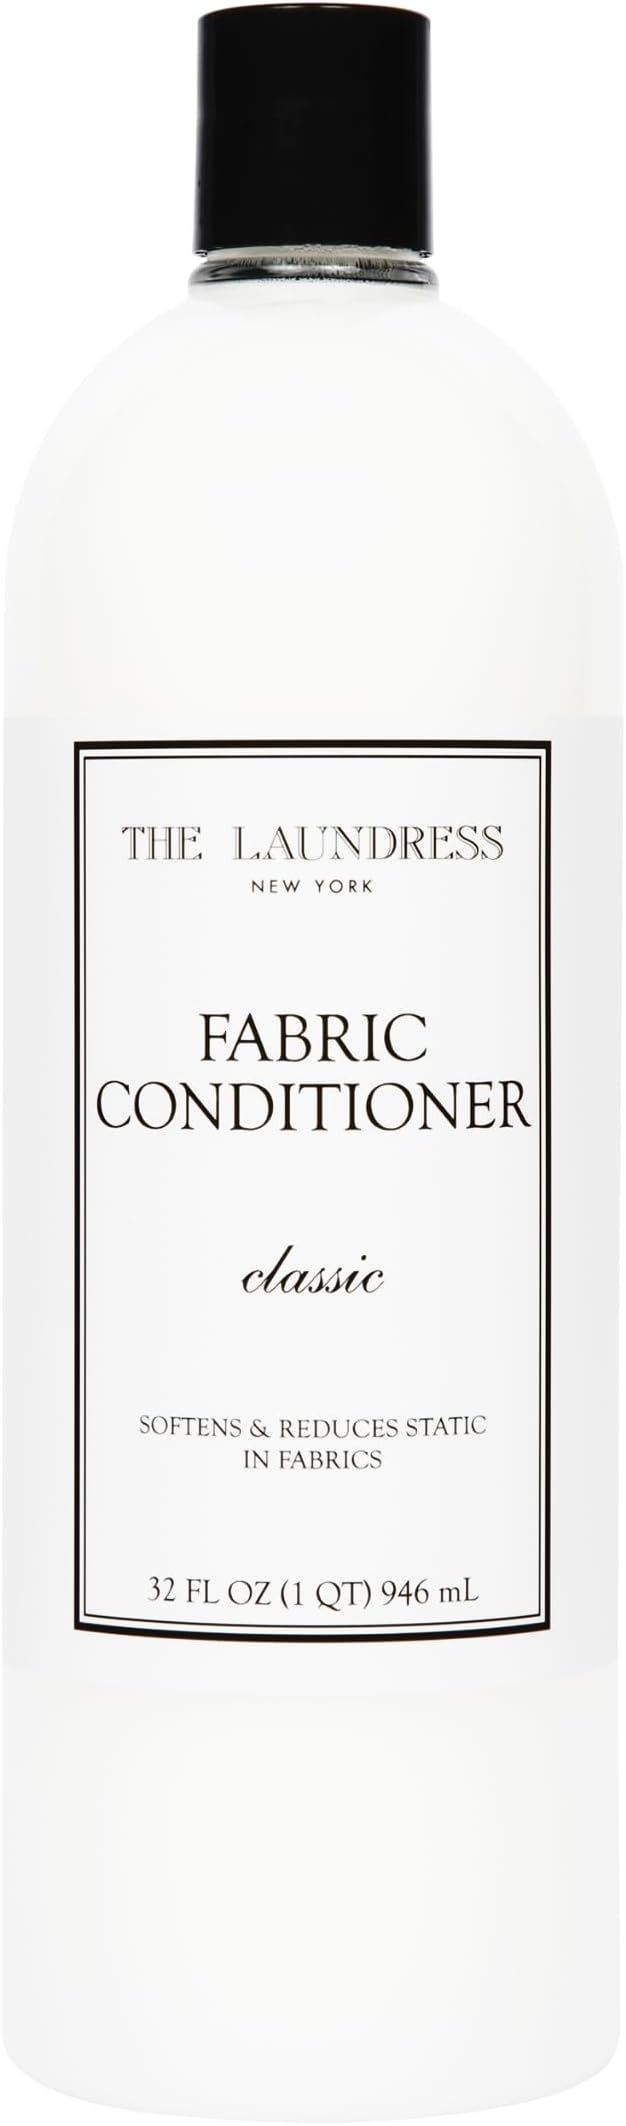 The Laundress Fabric Conditioner Classic, Liquid Fabric Softener, Soften Fabrics, Reduces Static,... | Amazon (US)